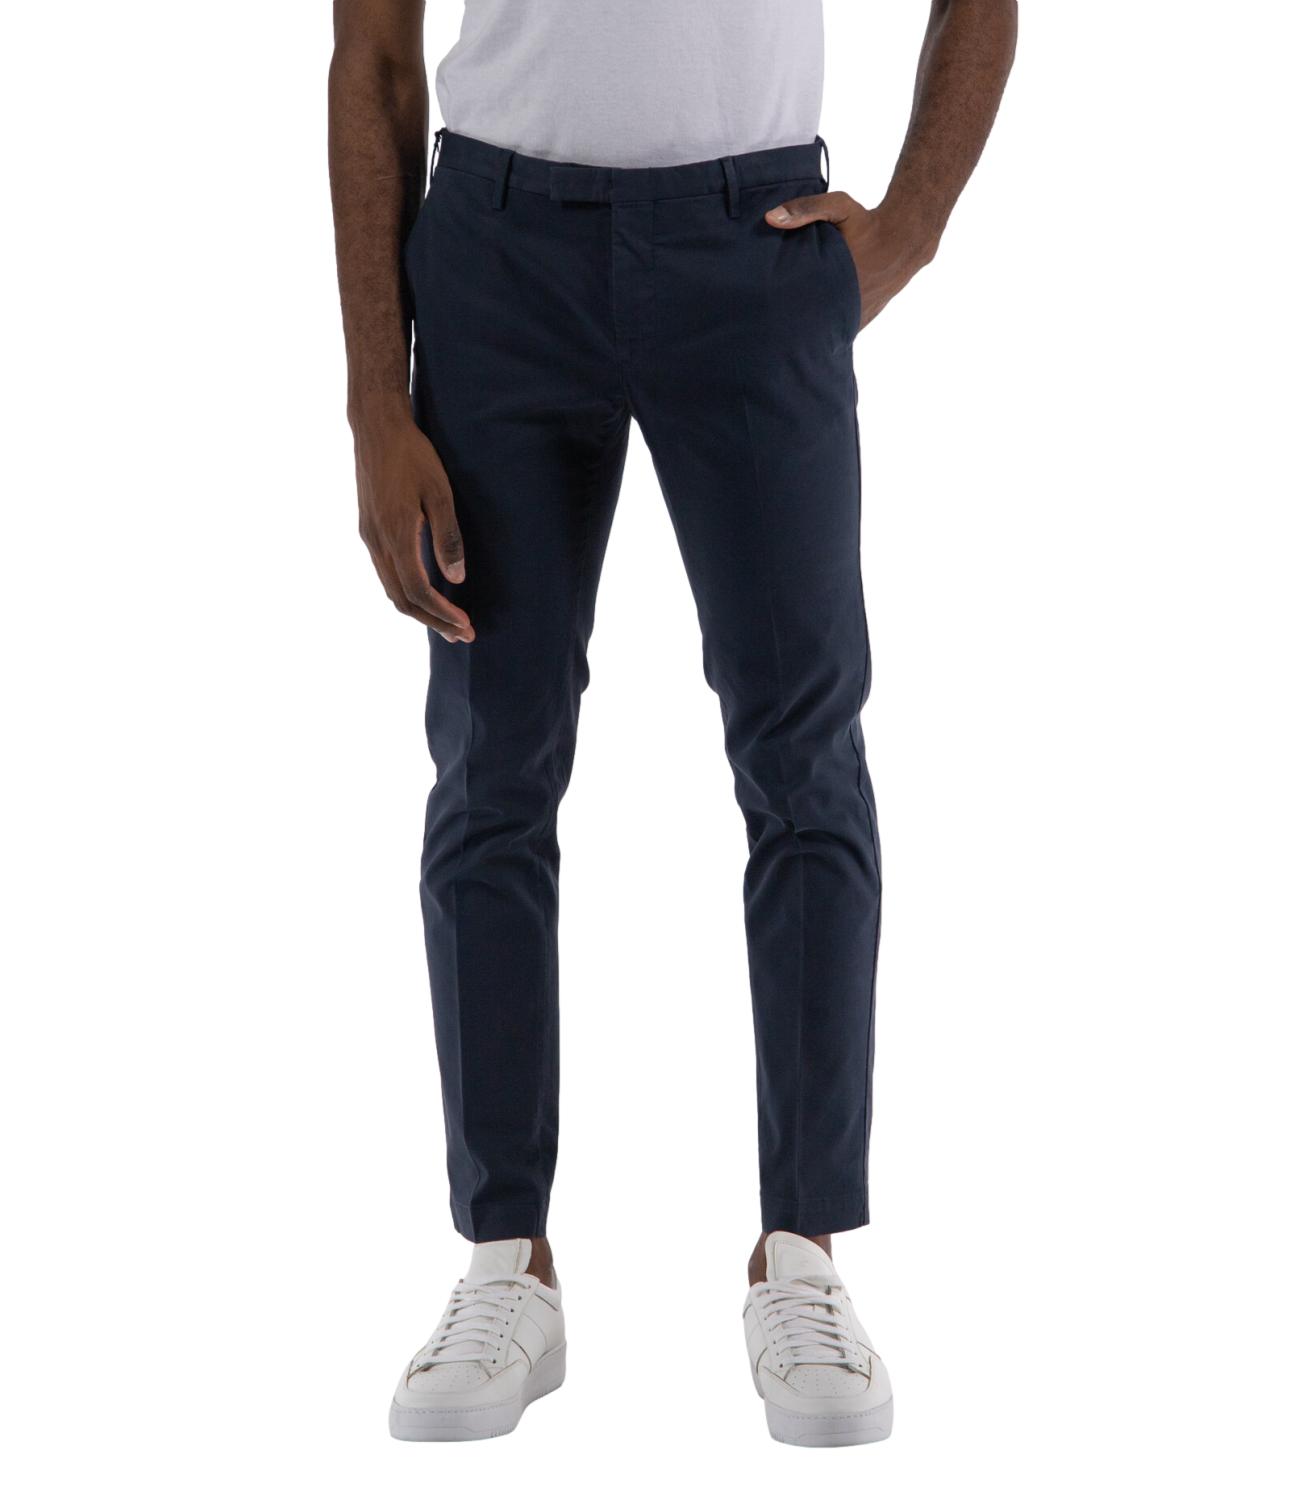 Pantalone blu skinny fit lunghezza 30 in cotone